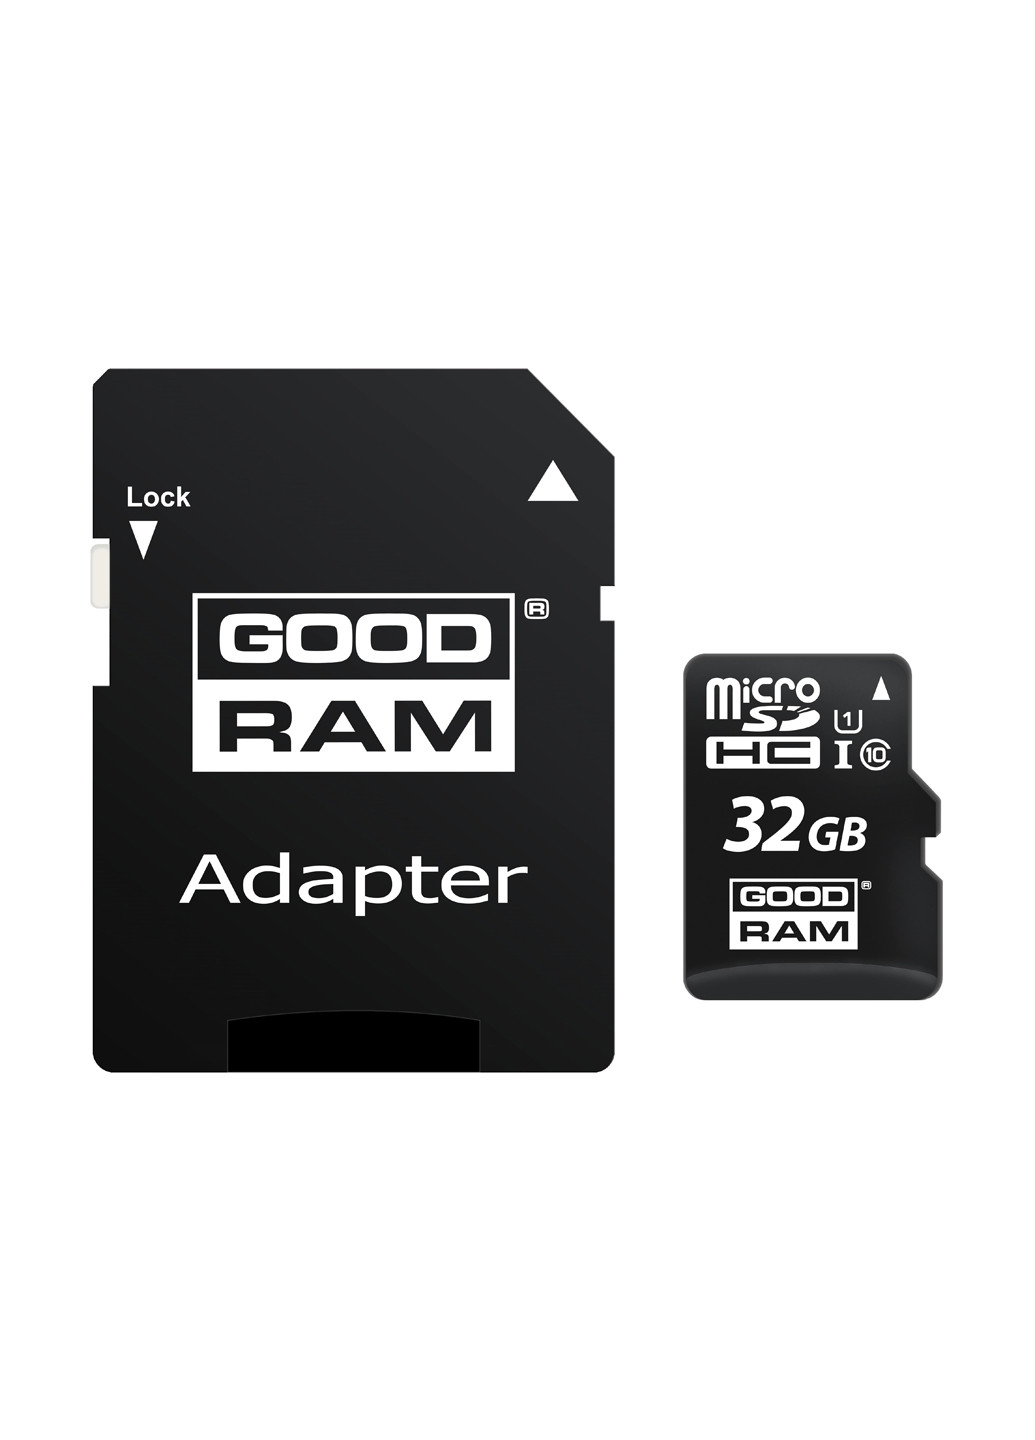 Карта памяти microSDHC 32GB C10 UHS-I + SD-adapter (M1AA-0320R12) Goodram карта памяти goodram microsdhc 32gb c10 uhs-i + sd-adapter (m1aa-0320r12) (135316871)